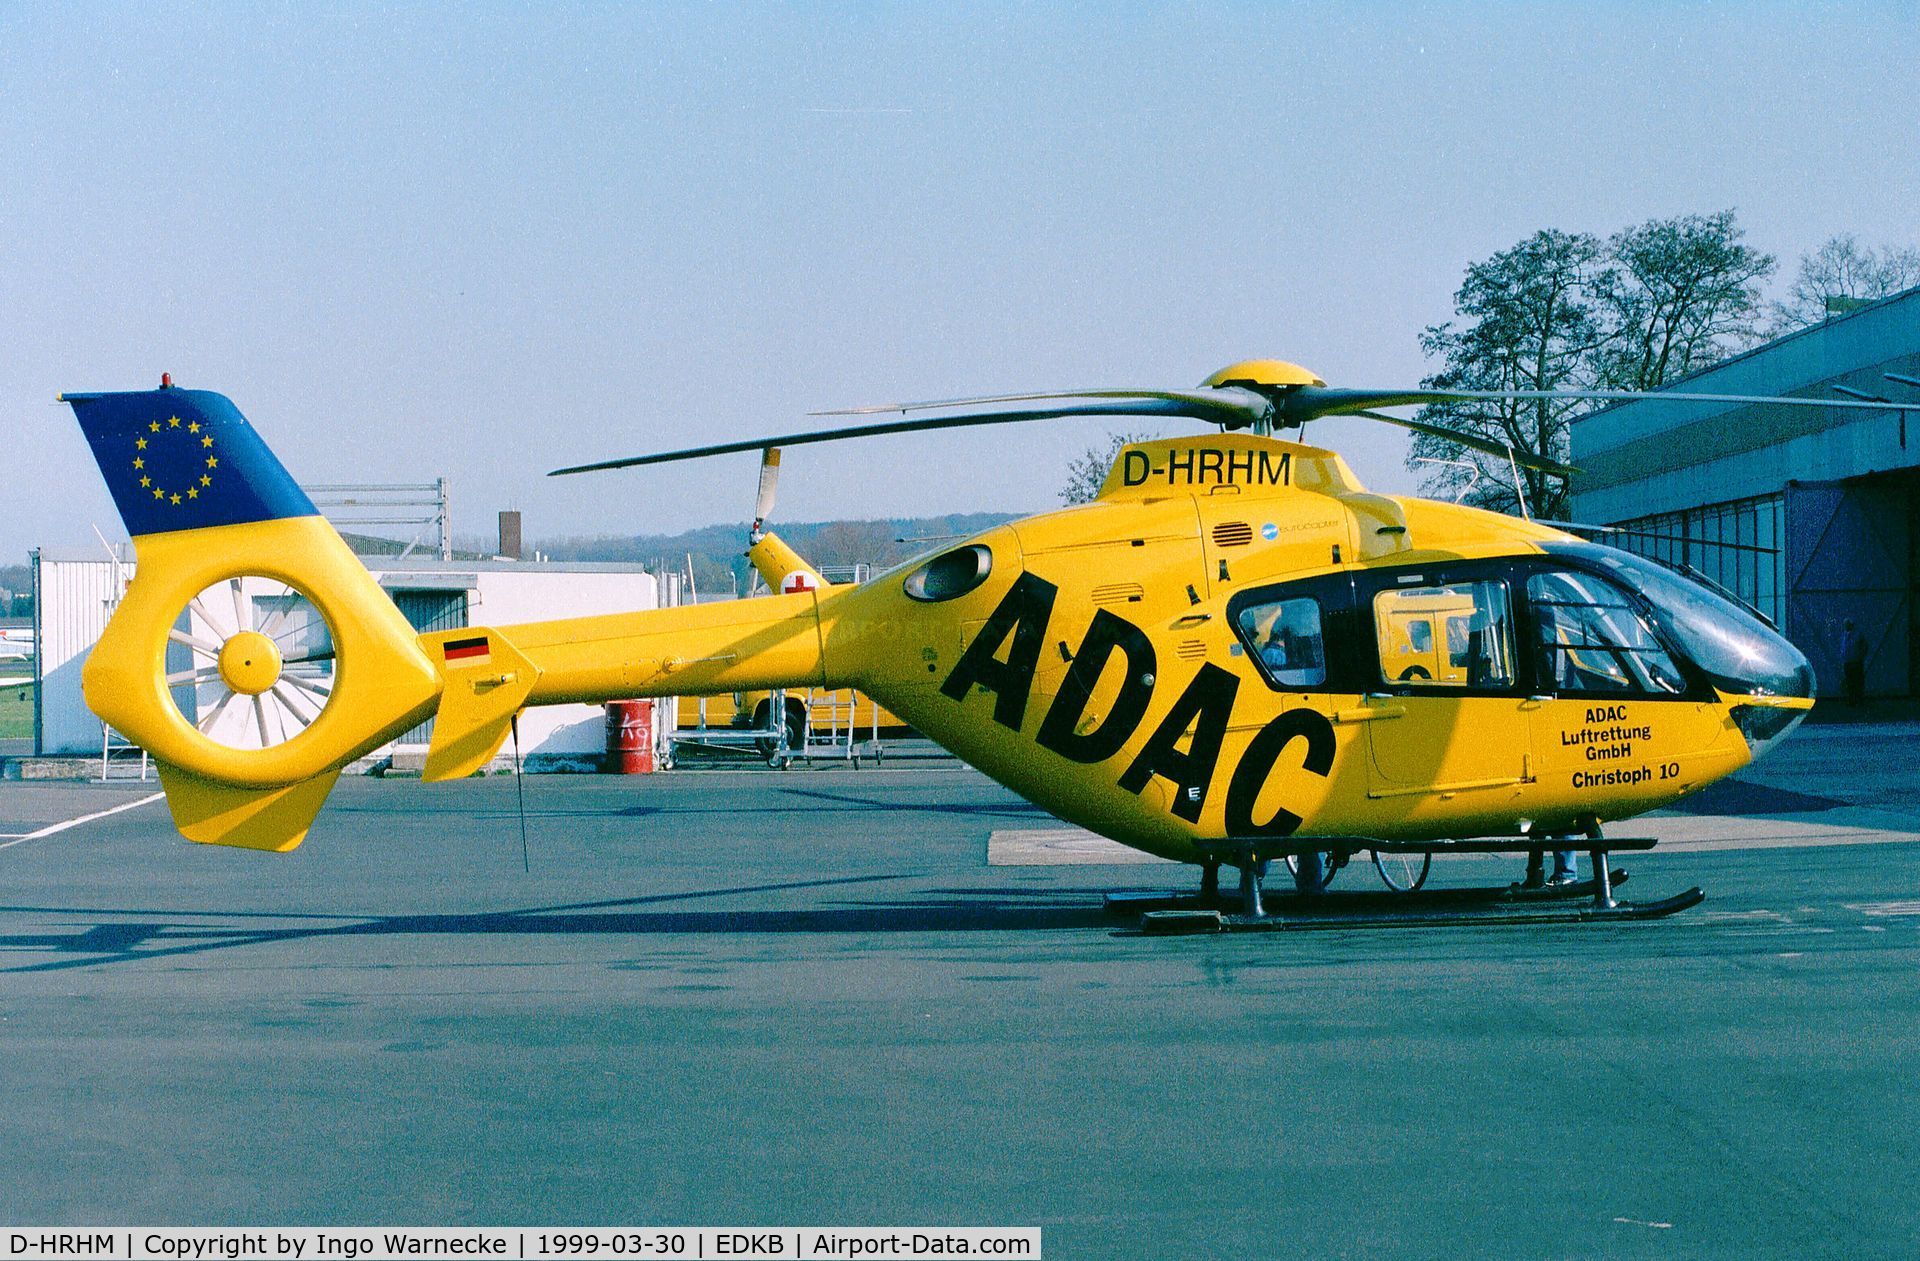 D-HRHM, 1997 Eurocopter EC-135T-1 C/N 0027, Eurocopter EC135T-1 'Christoph 10' of ADAC Luftrettung (EMS) at Bonn-Hangelar airfield